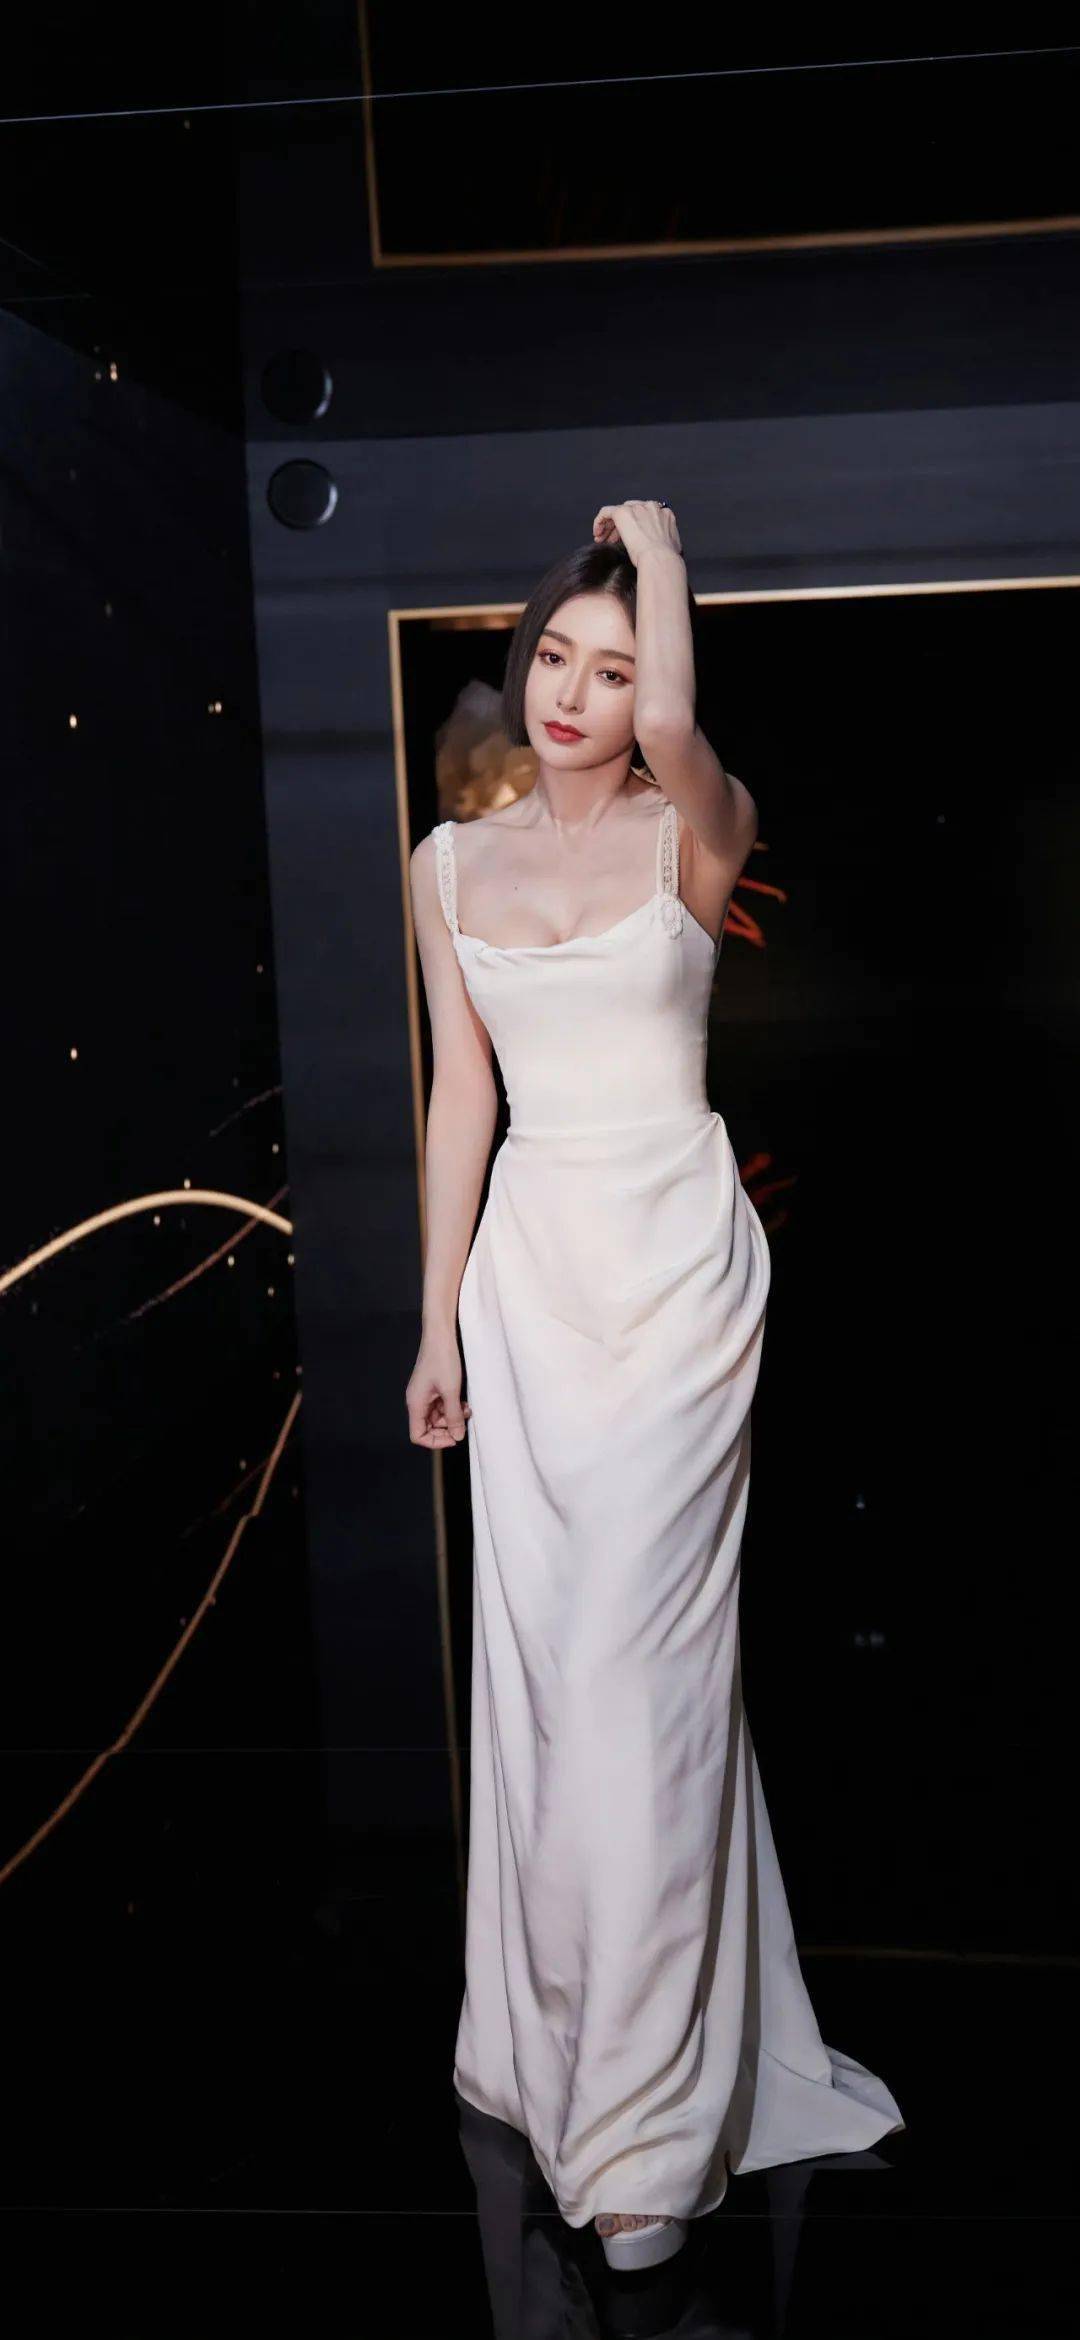 总之,秦岚在这组白色吊带长裙写真中展现出了一种妩媚性感的一面,但又